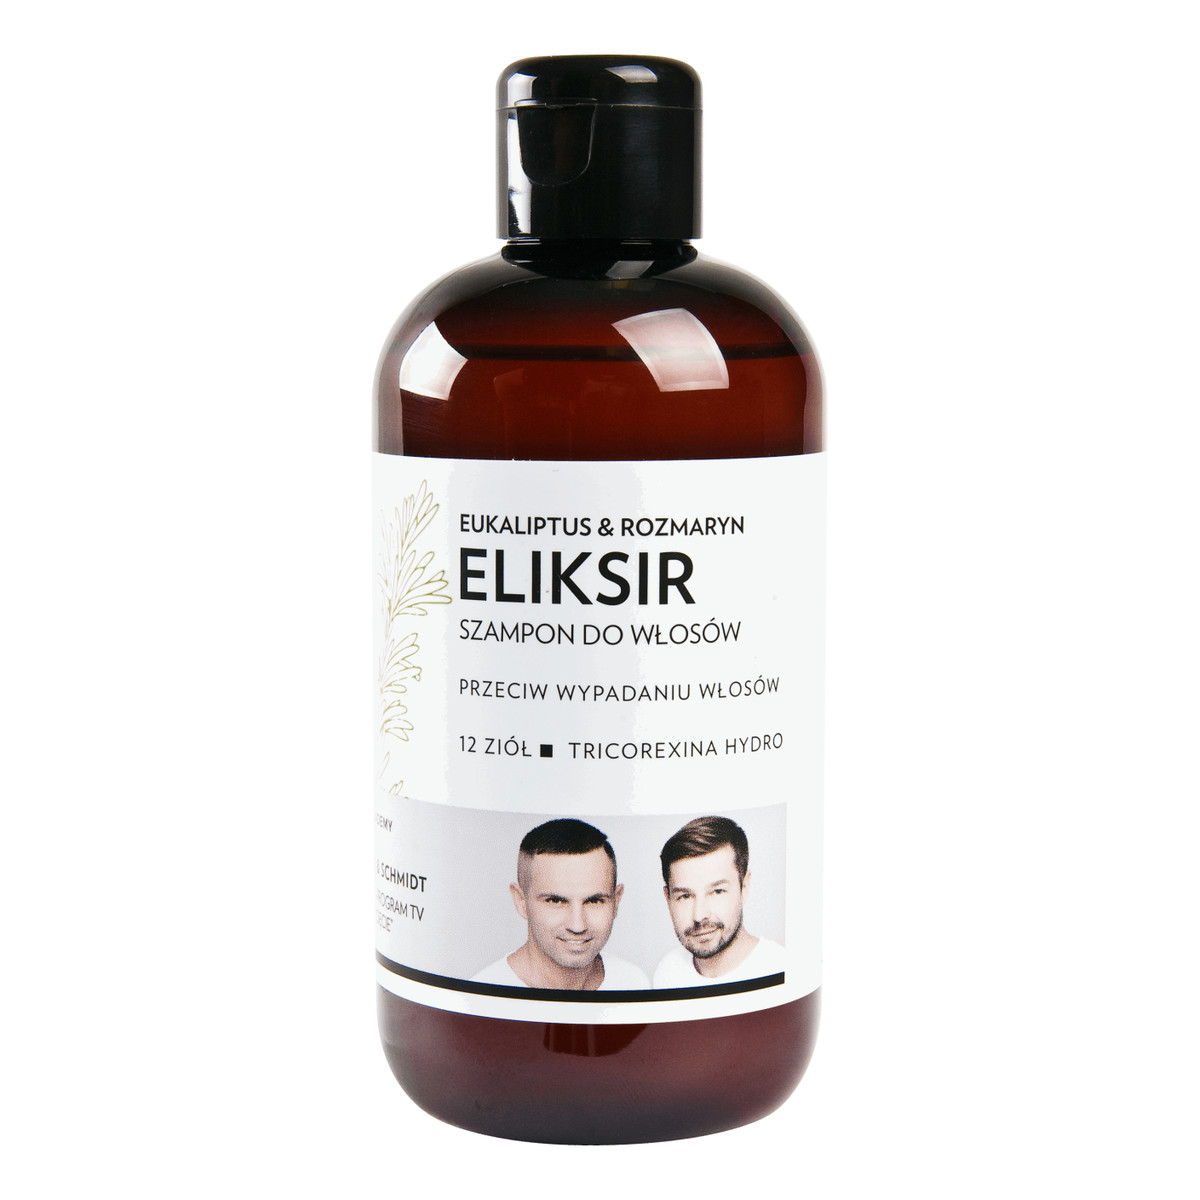 eliksir szampon do włosów eukaliptus i rozmaryn